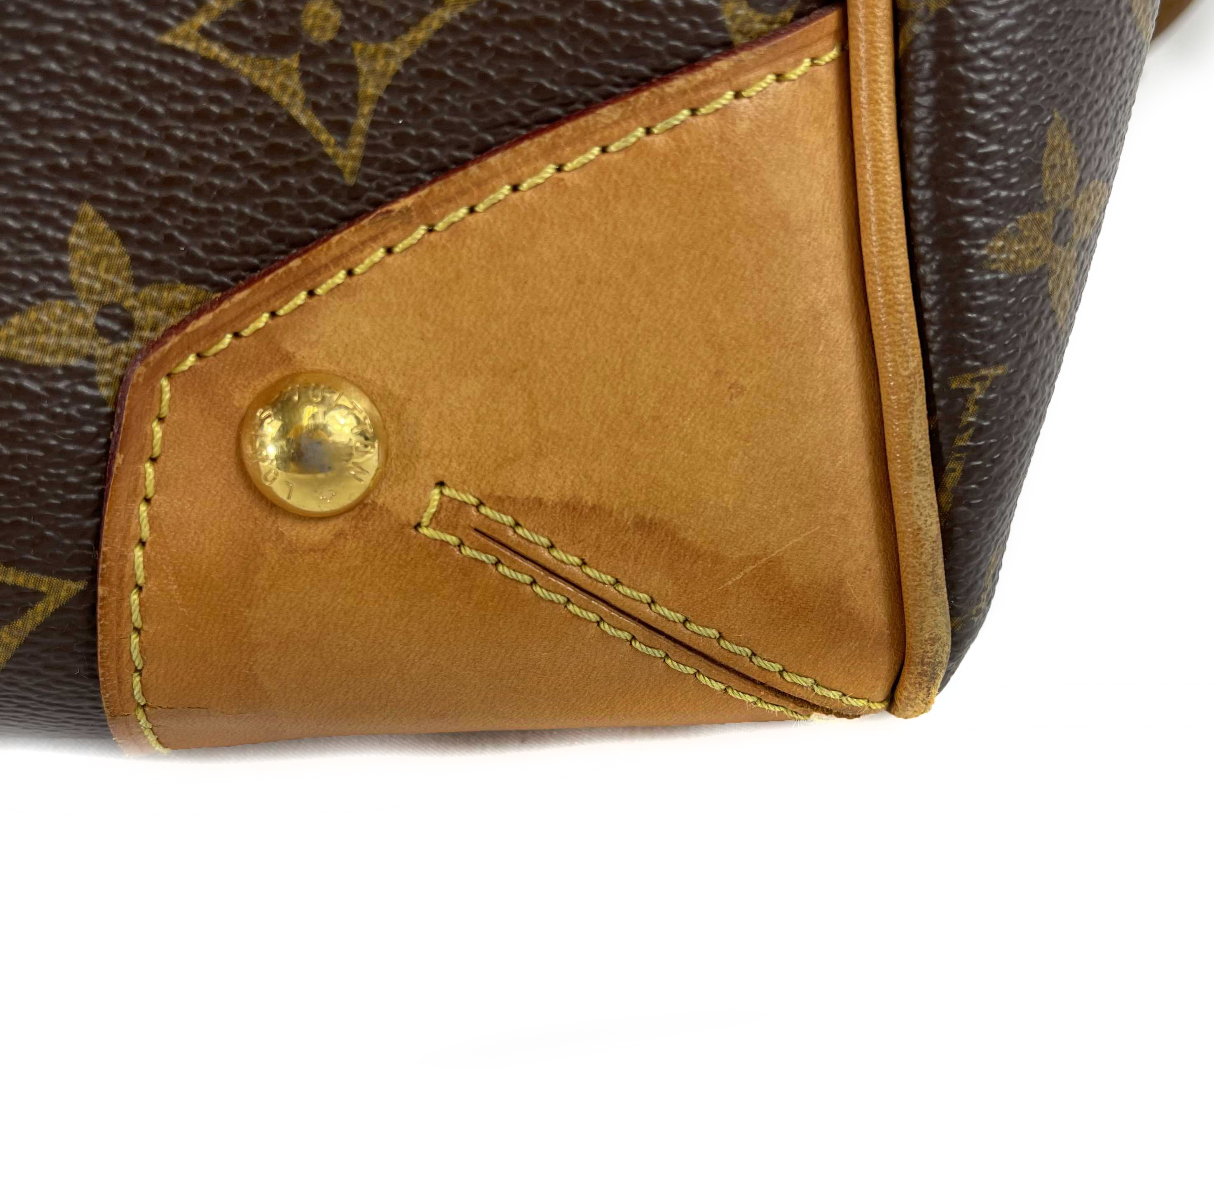 Authentic Louis Vuitton Retiro Handbag Monogram Canvas PM for